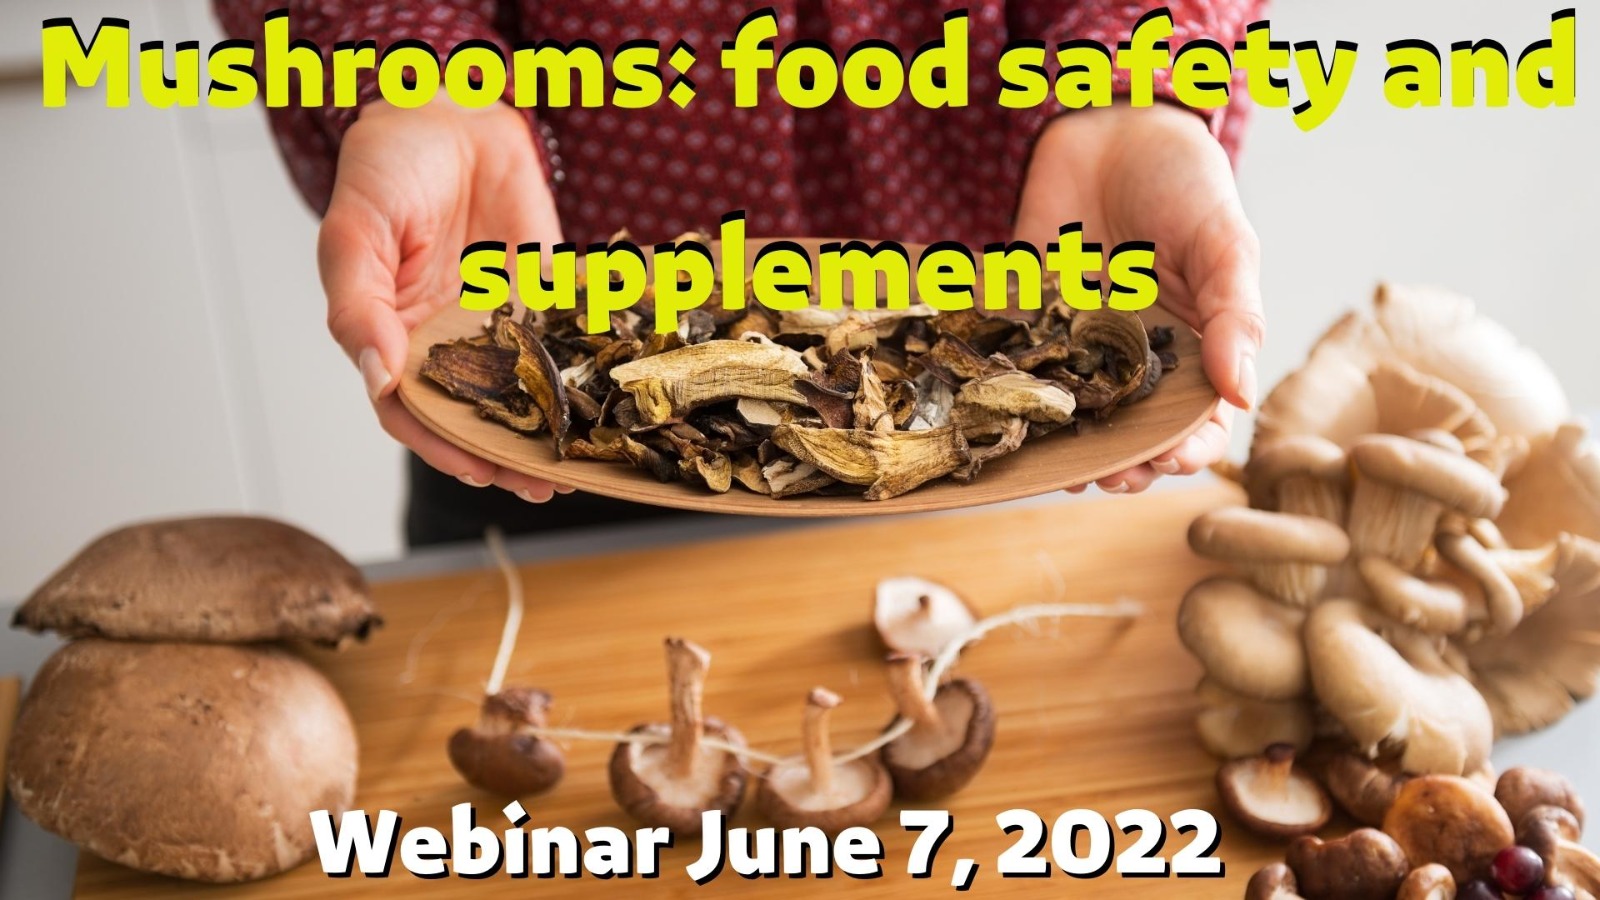 Evento Formativo Webinar “I Funghi: sicurezza alimentare e integratori” – 7 giugno 2022 dalle ore14,30 alle 17.30 – presentazione pubblicazione scientifica sul tema